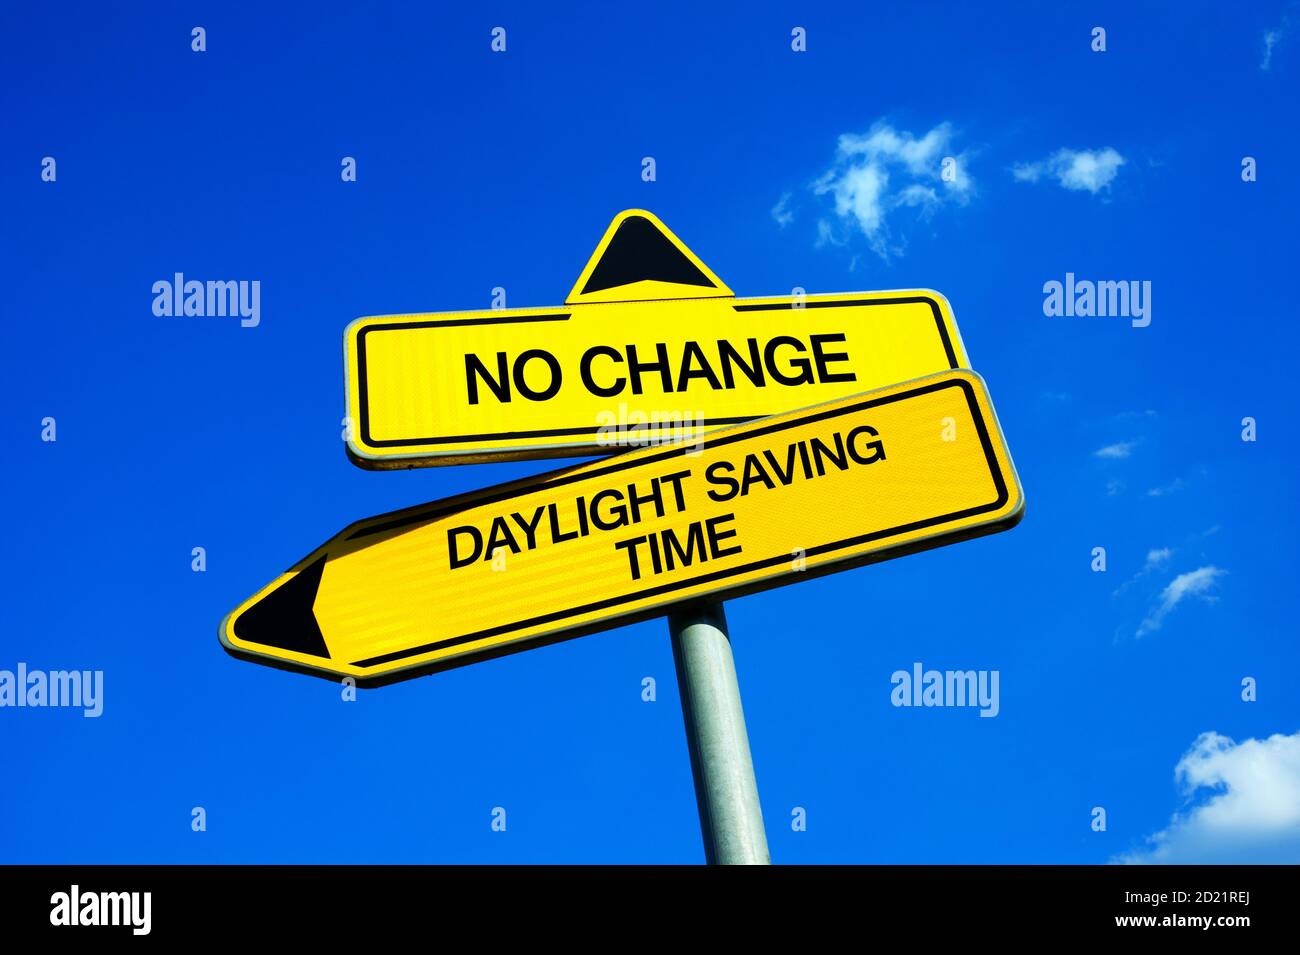 Keine Änderung vs Sommerzeit - Verkehrszeichen mit zwei Optionen - Verschieben Uhren vorwärts oder rückwärts oder Stornierung und Abschaffung der Sommerzeit. Stockfoto